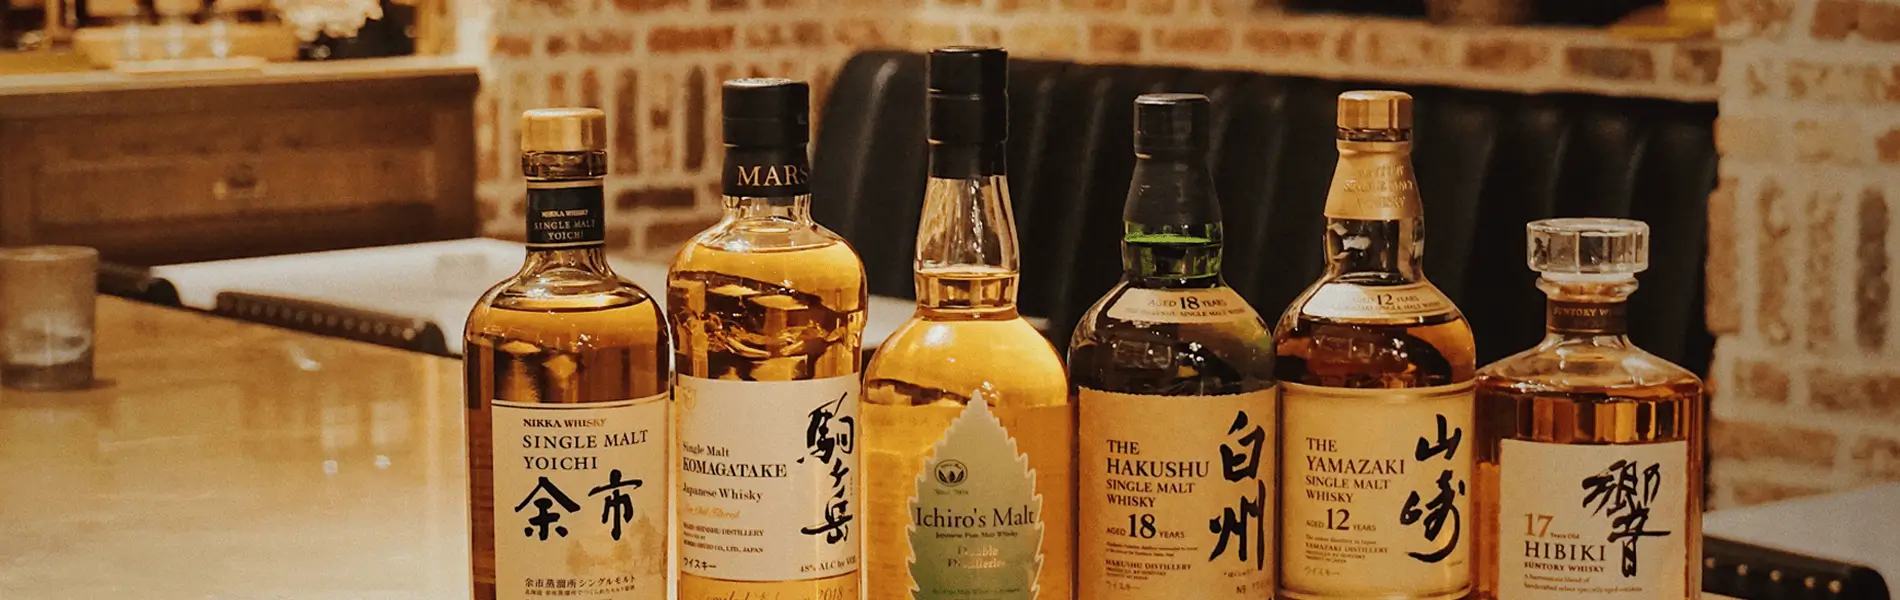 日本のウイスキー。日本のお酒の輸出は成長が見込まれる事業